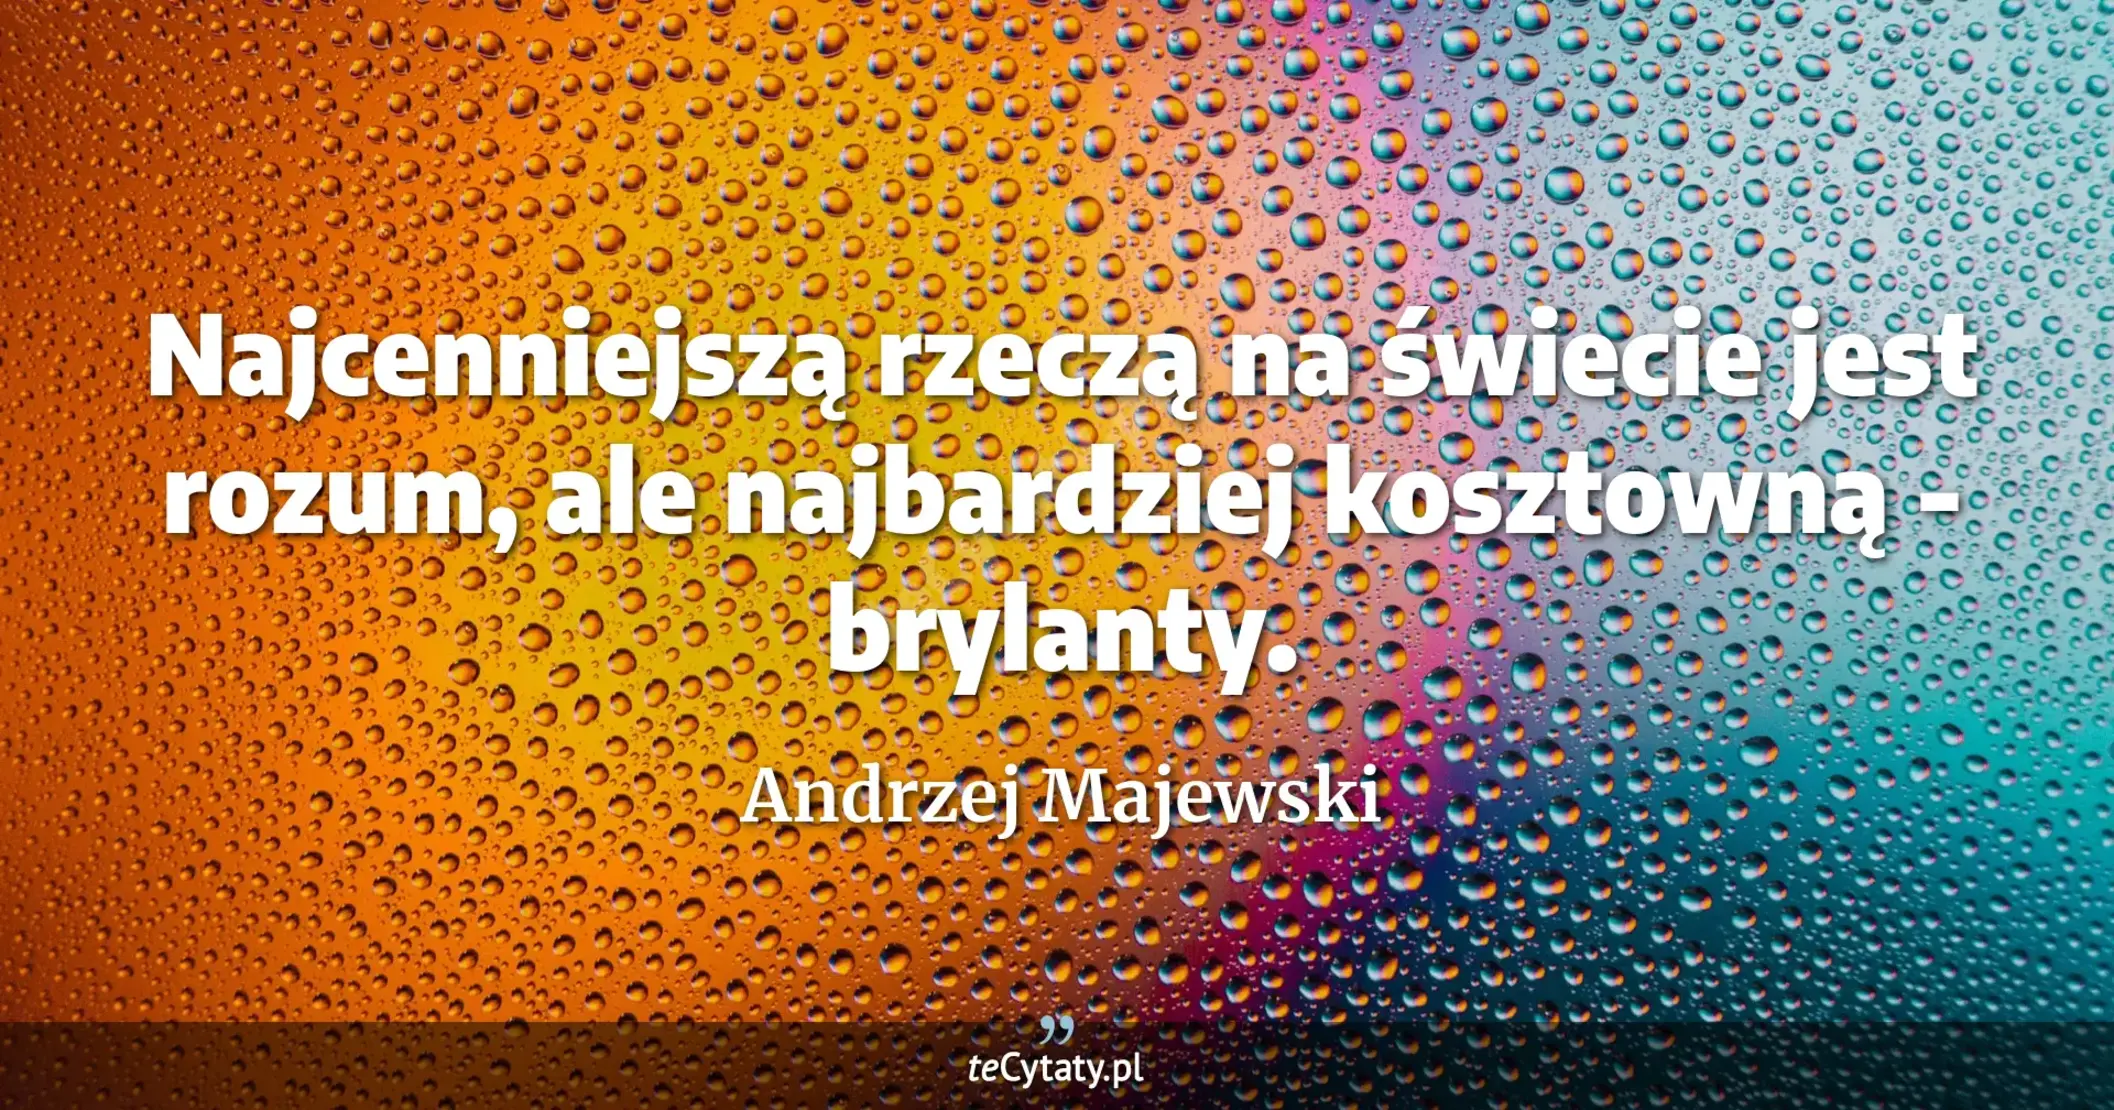 Najcenniejszą rzeczą na świecie jest rozum, ale najbardziej kosztowną - brylanty. - Andrzej Majewski